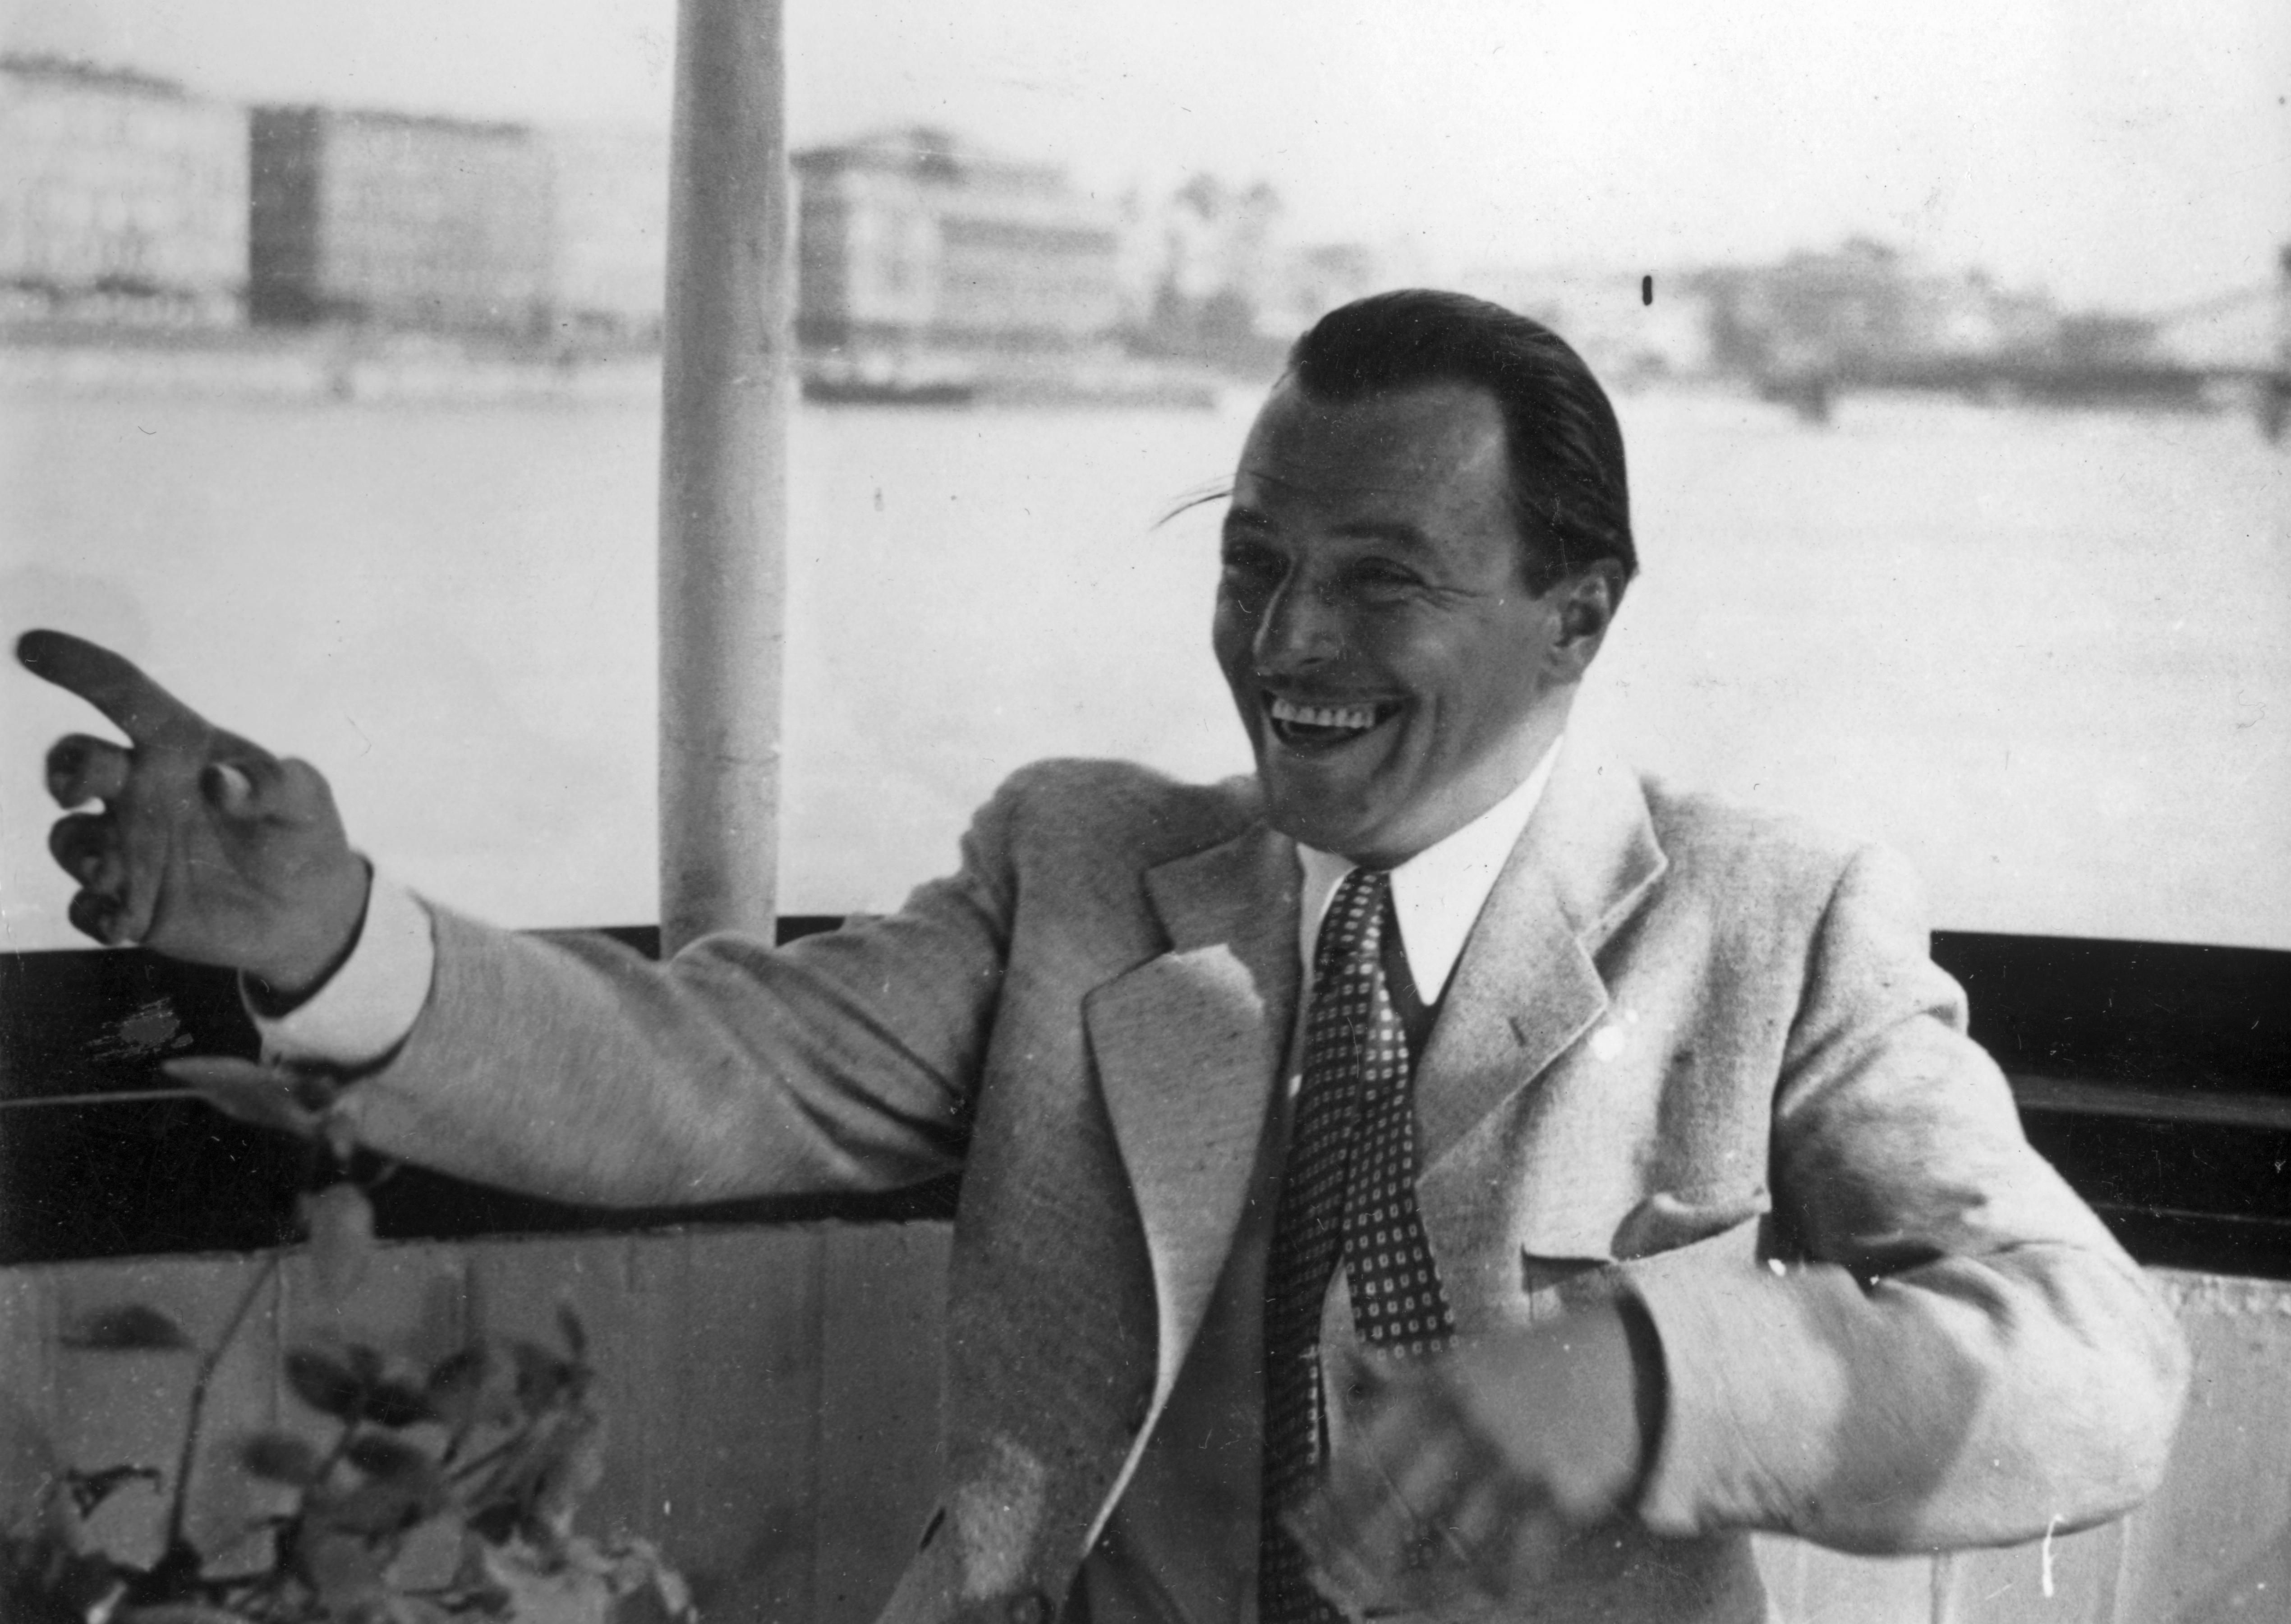 A 30-as évek egyik legnagyobb magyar ikonja, Jávor Pál nevet, háttérben a Duna